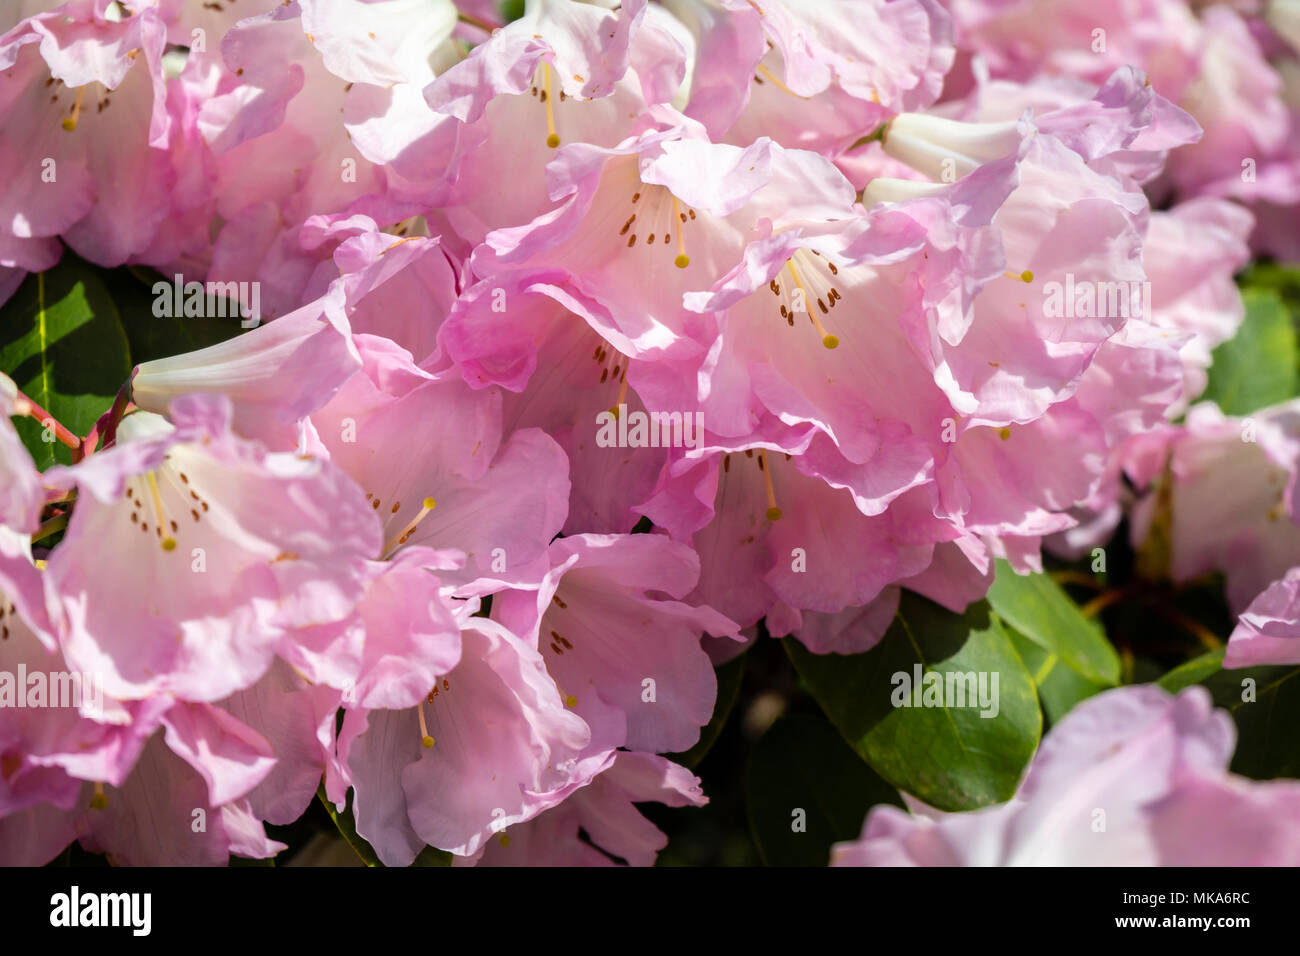 Close up of pink flower préfabriquées d'un rhododendron bow bells variété végétale, un hybride de corona x williamsianum Exbury Gardens dans le courant du mois de mai/ printemps, UK Banque D'Images